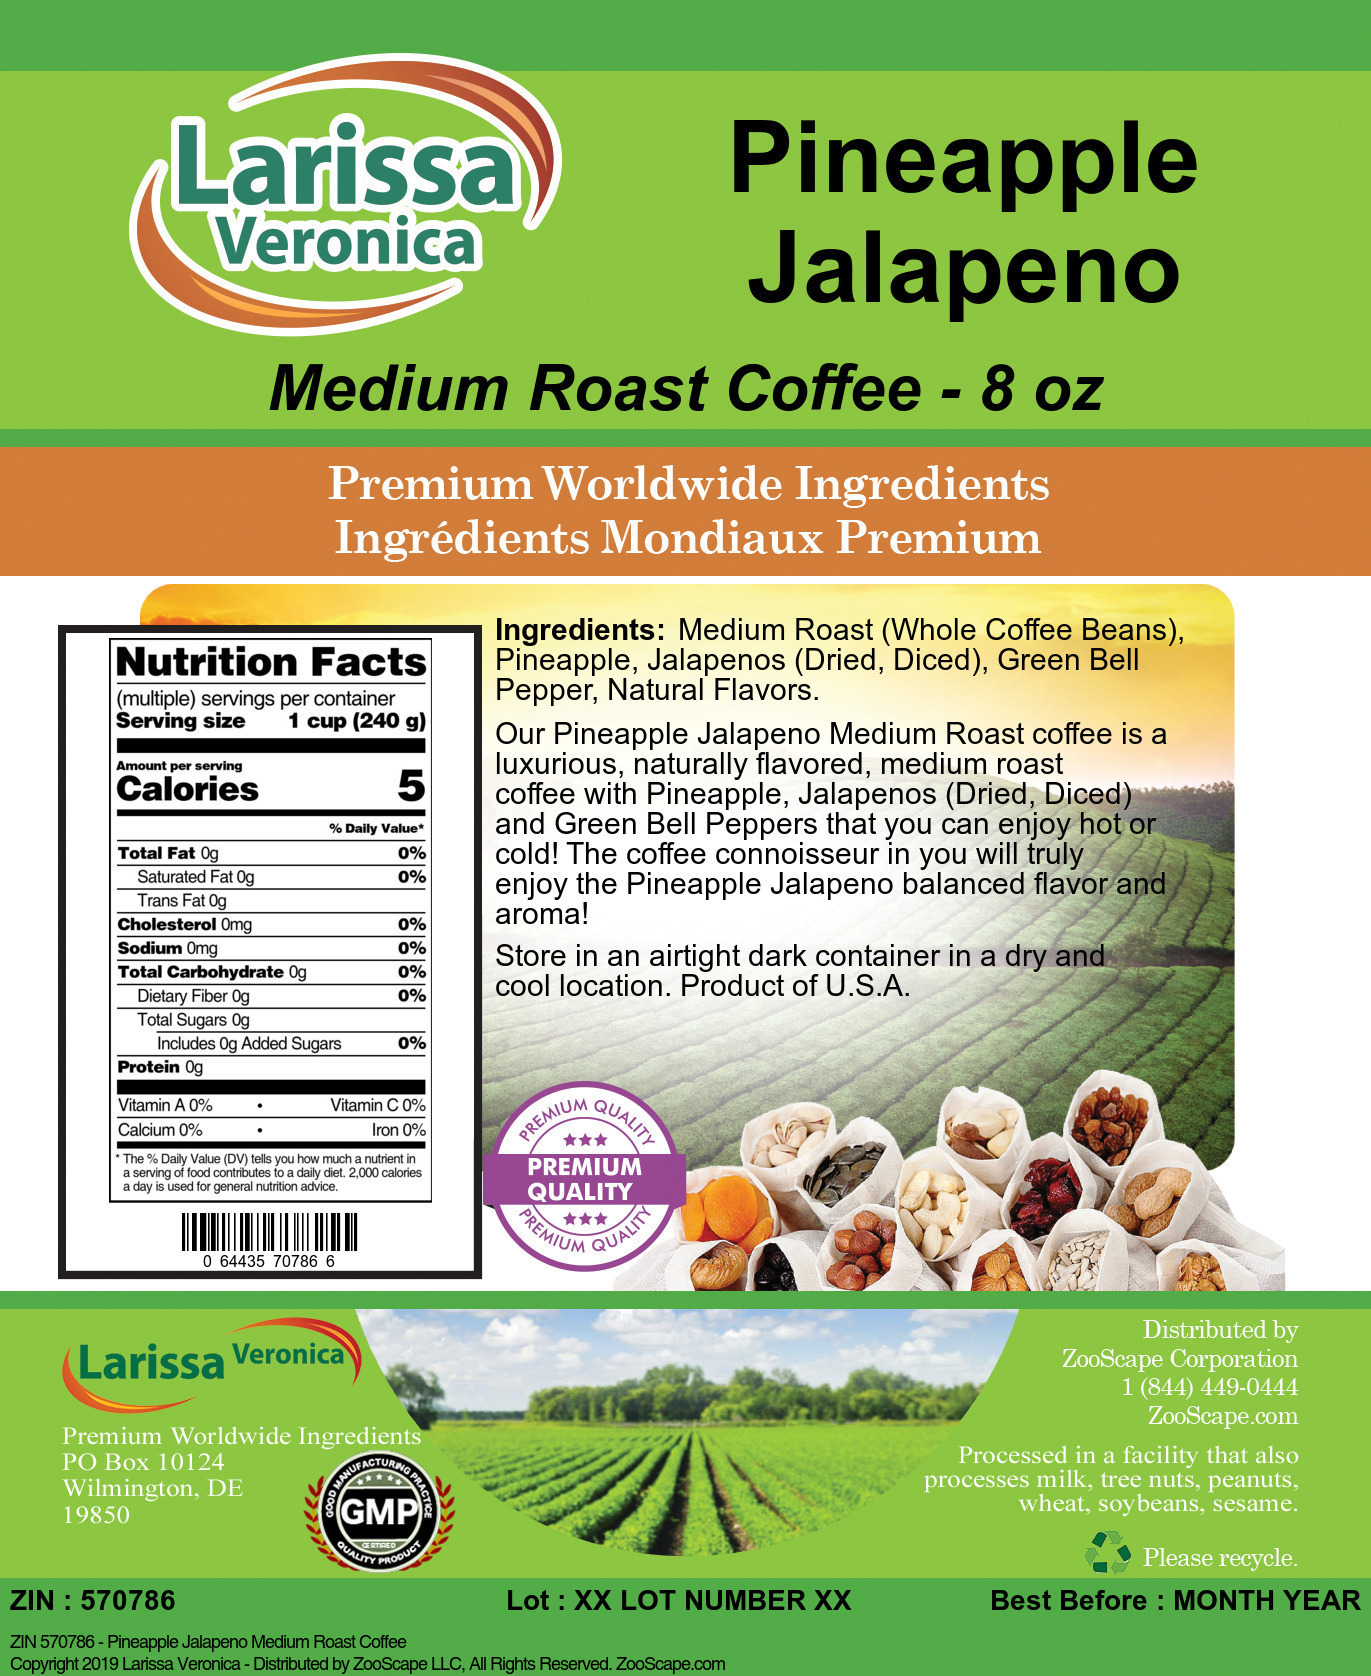 Pineapple Jalapeno Medium Roast Coffee - Label